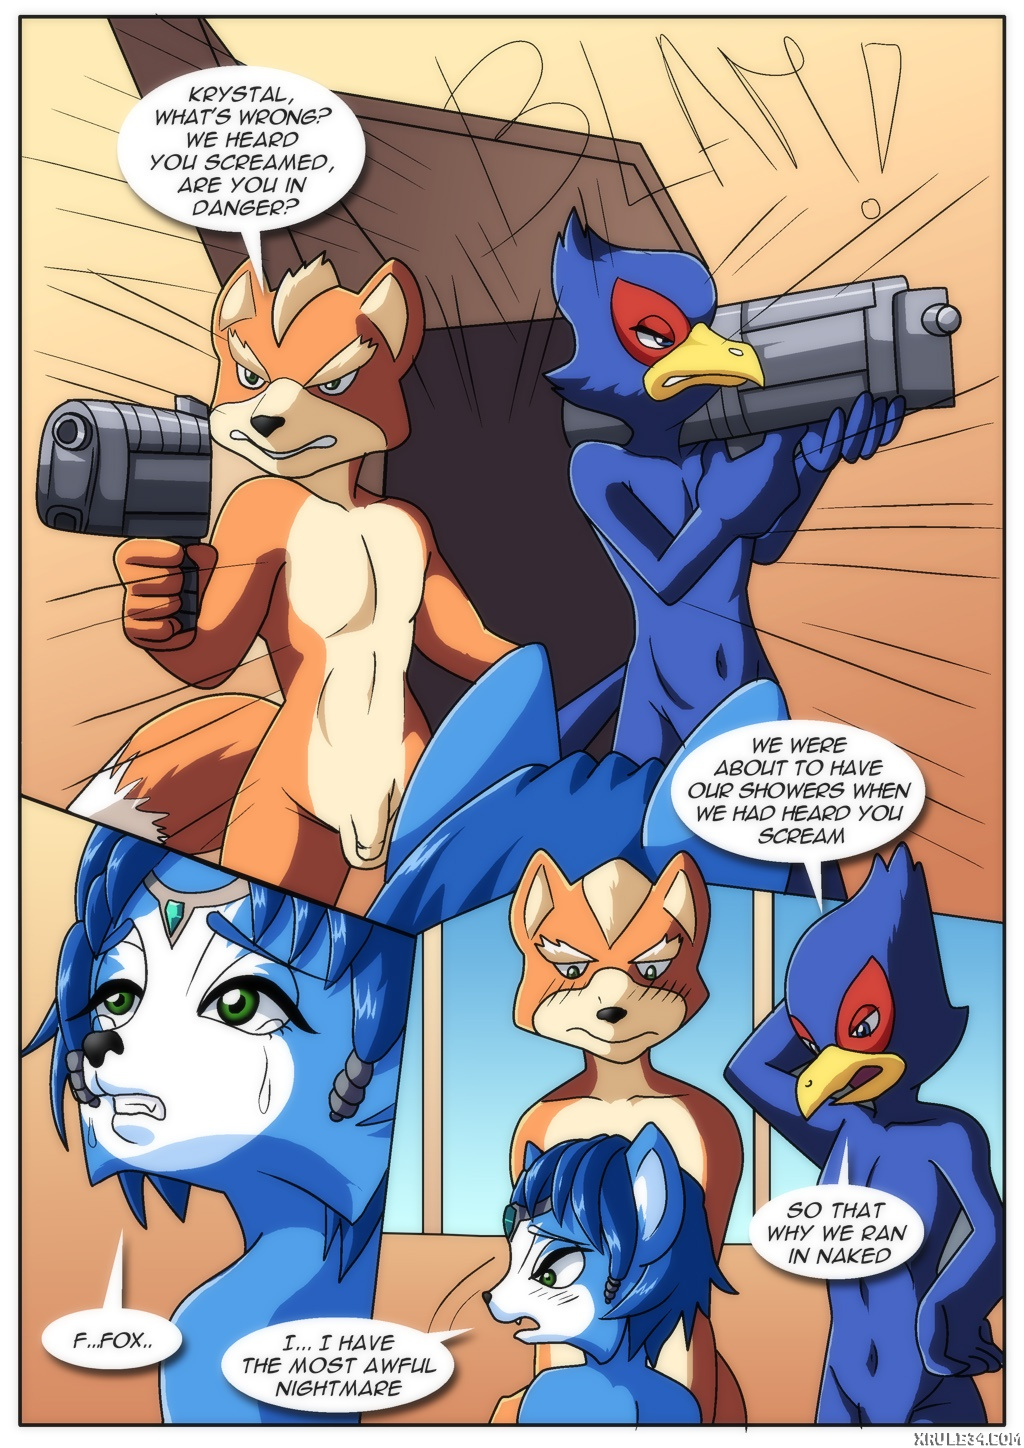 Star fox x krystal porn comic